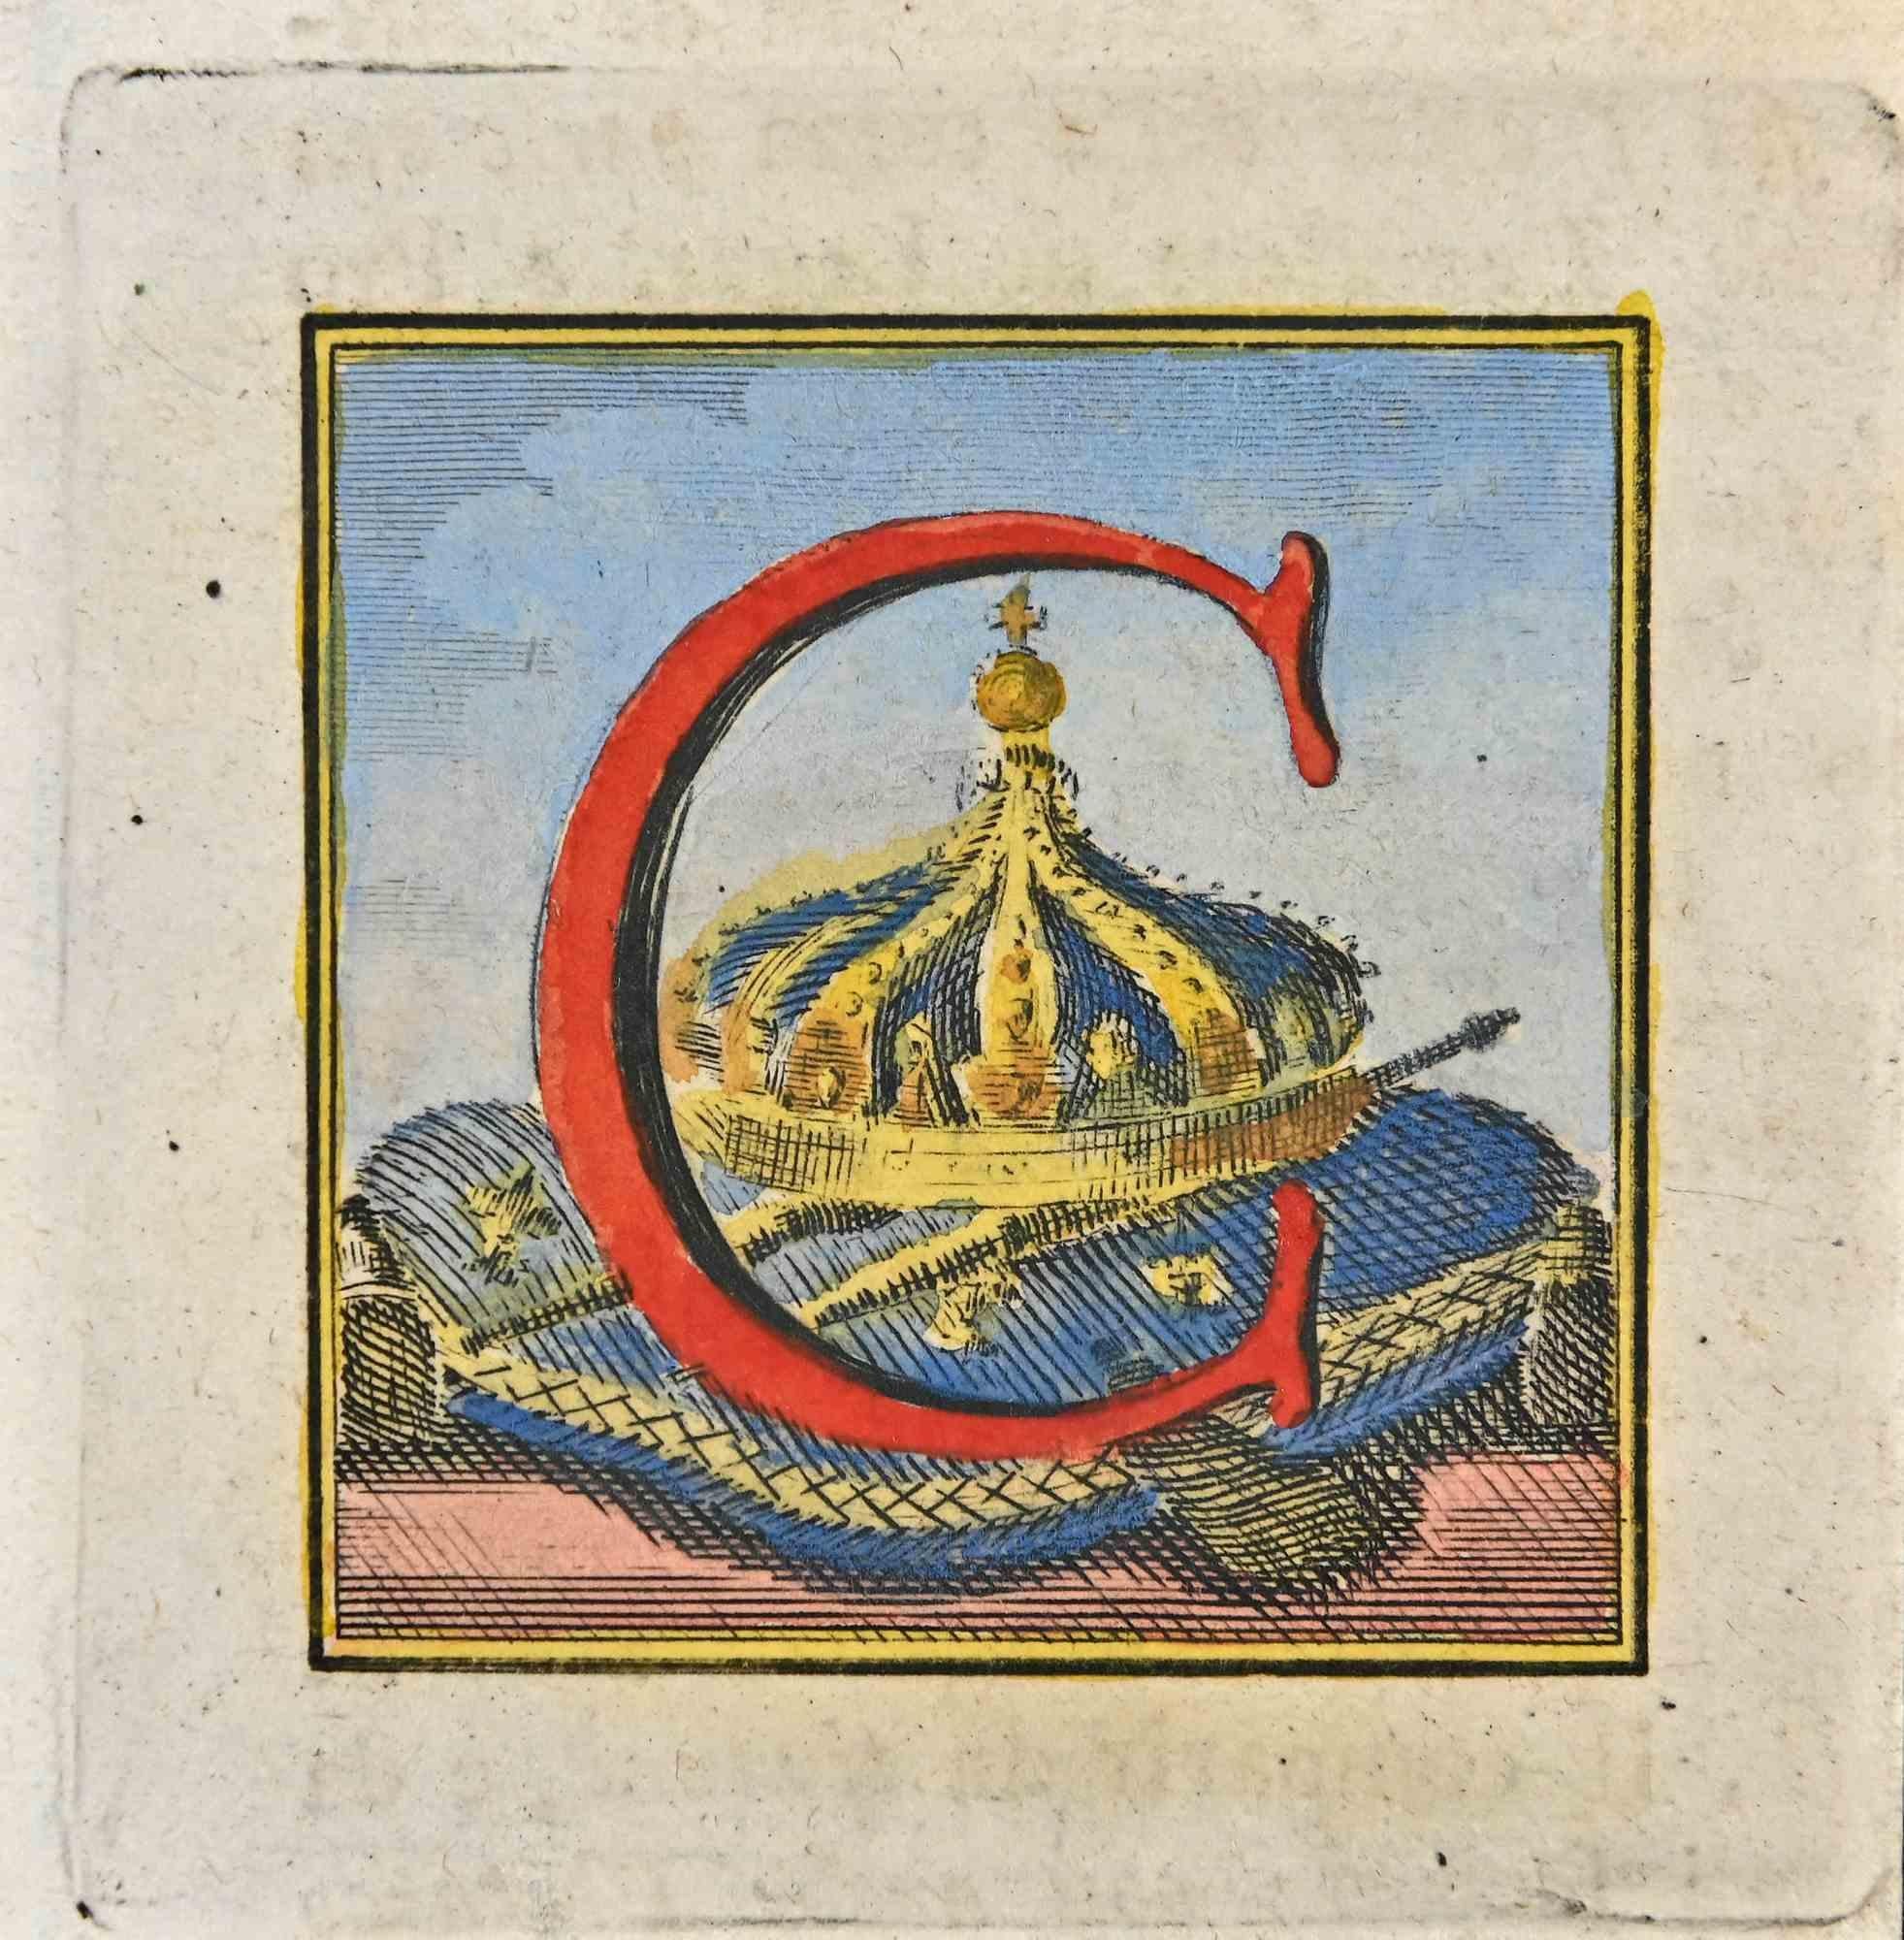 Lettre de l'Alphabet C de la série "Antiquités d'Herculanum", est une gravure sur papier réalisée par Luigi Vanvitelli au 18ème siècle.

Bonnes conditions.

La gravure appartient à la suite d'estampes "Antiquités d'Herculanum exposées" (titre